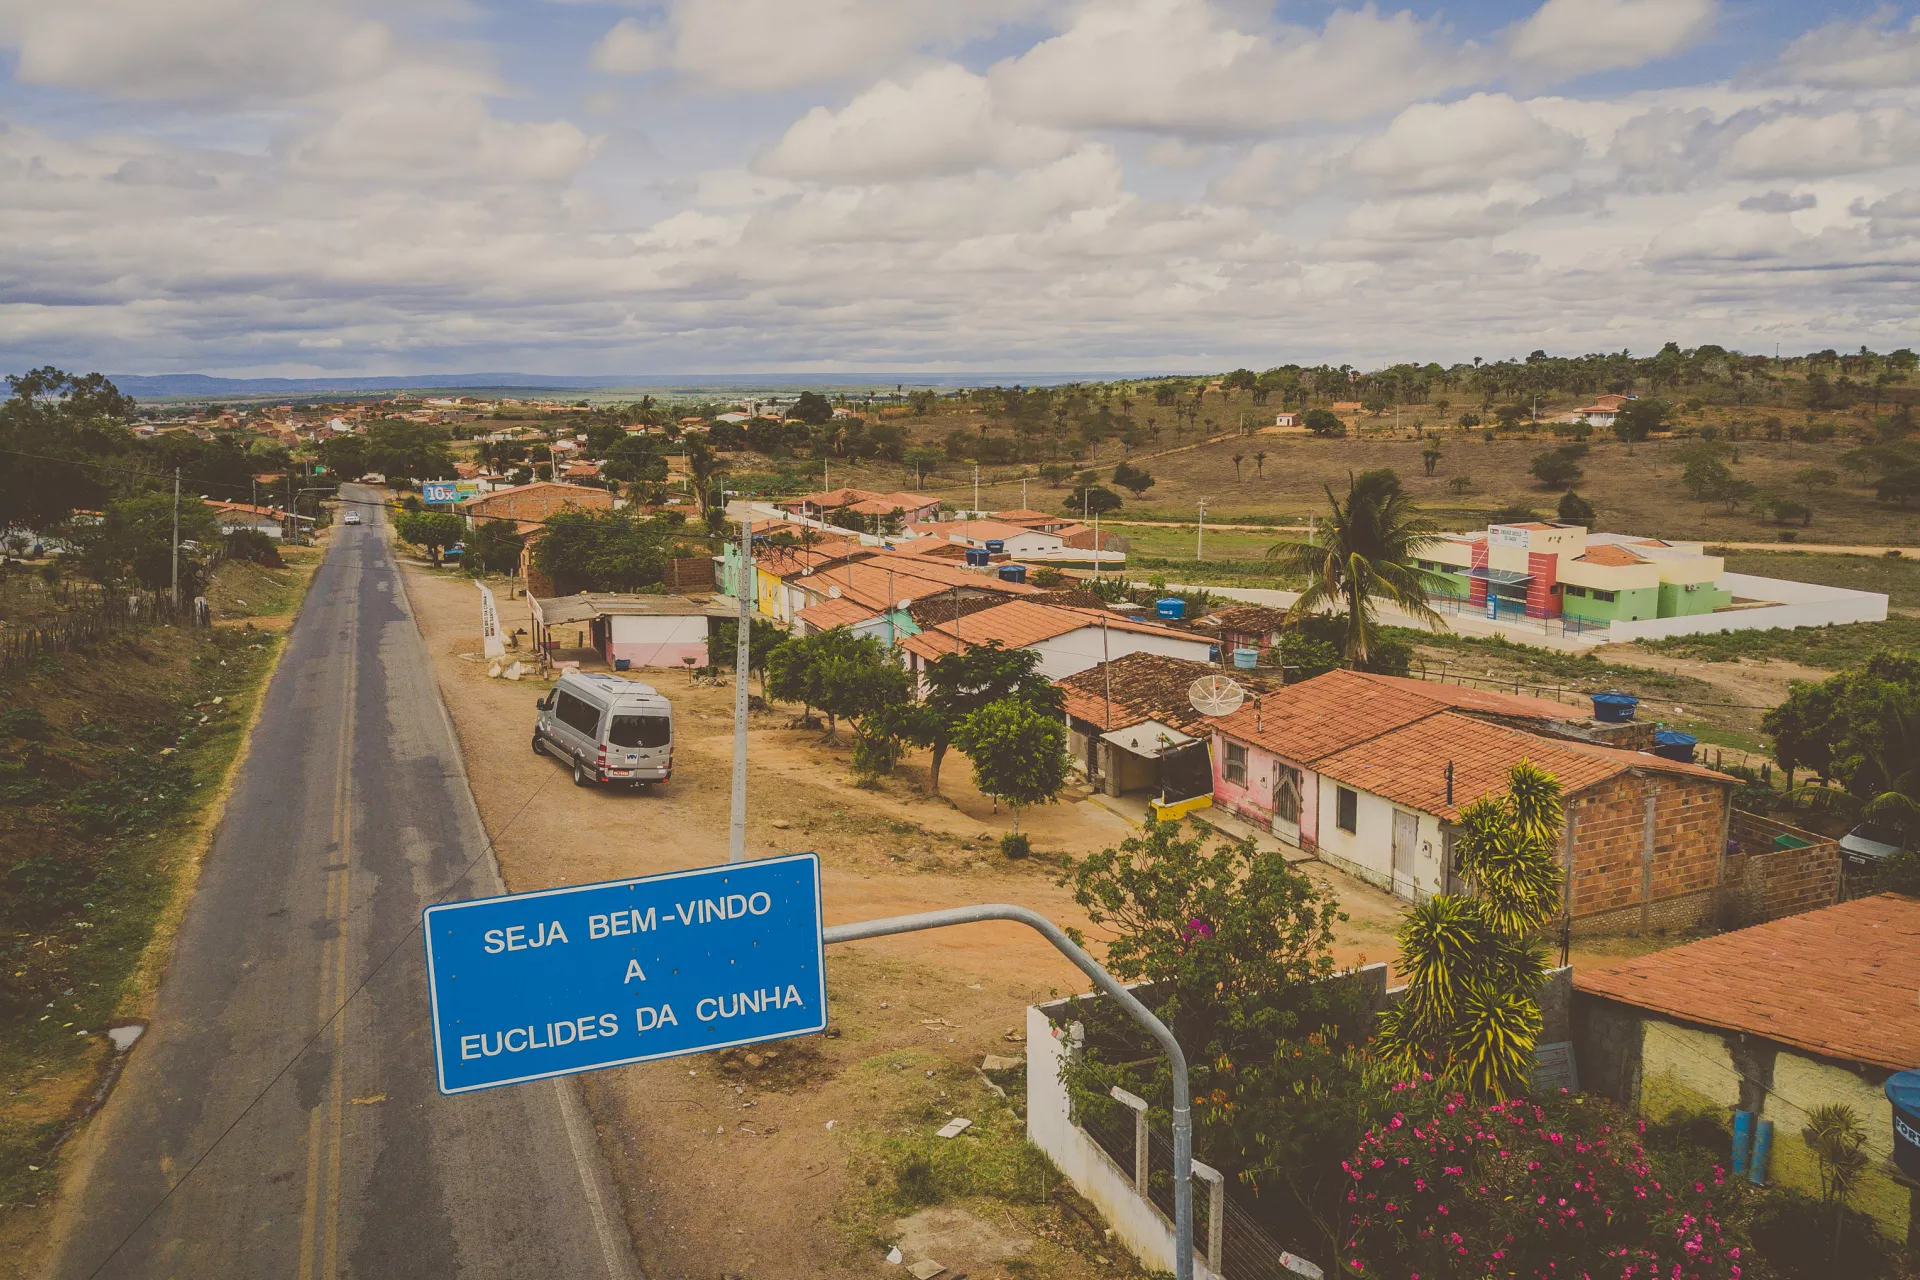 Foto aérea de Euclides da Cunha mostra a placa de limite do município onde está escrito Seja bem-vindo a Euclides da Cunha. Na foto aparecem algumas casas e um ônibus.